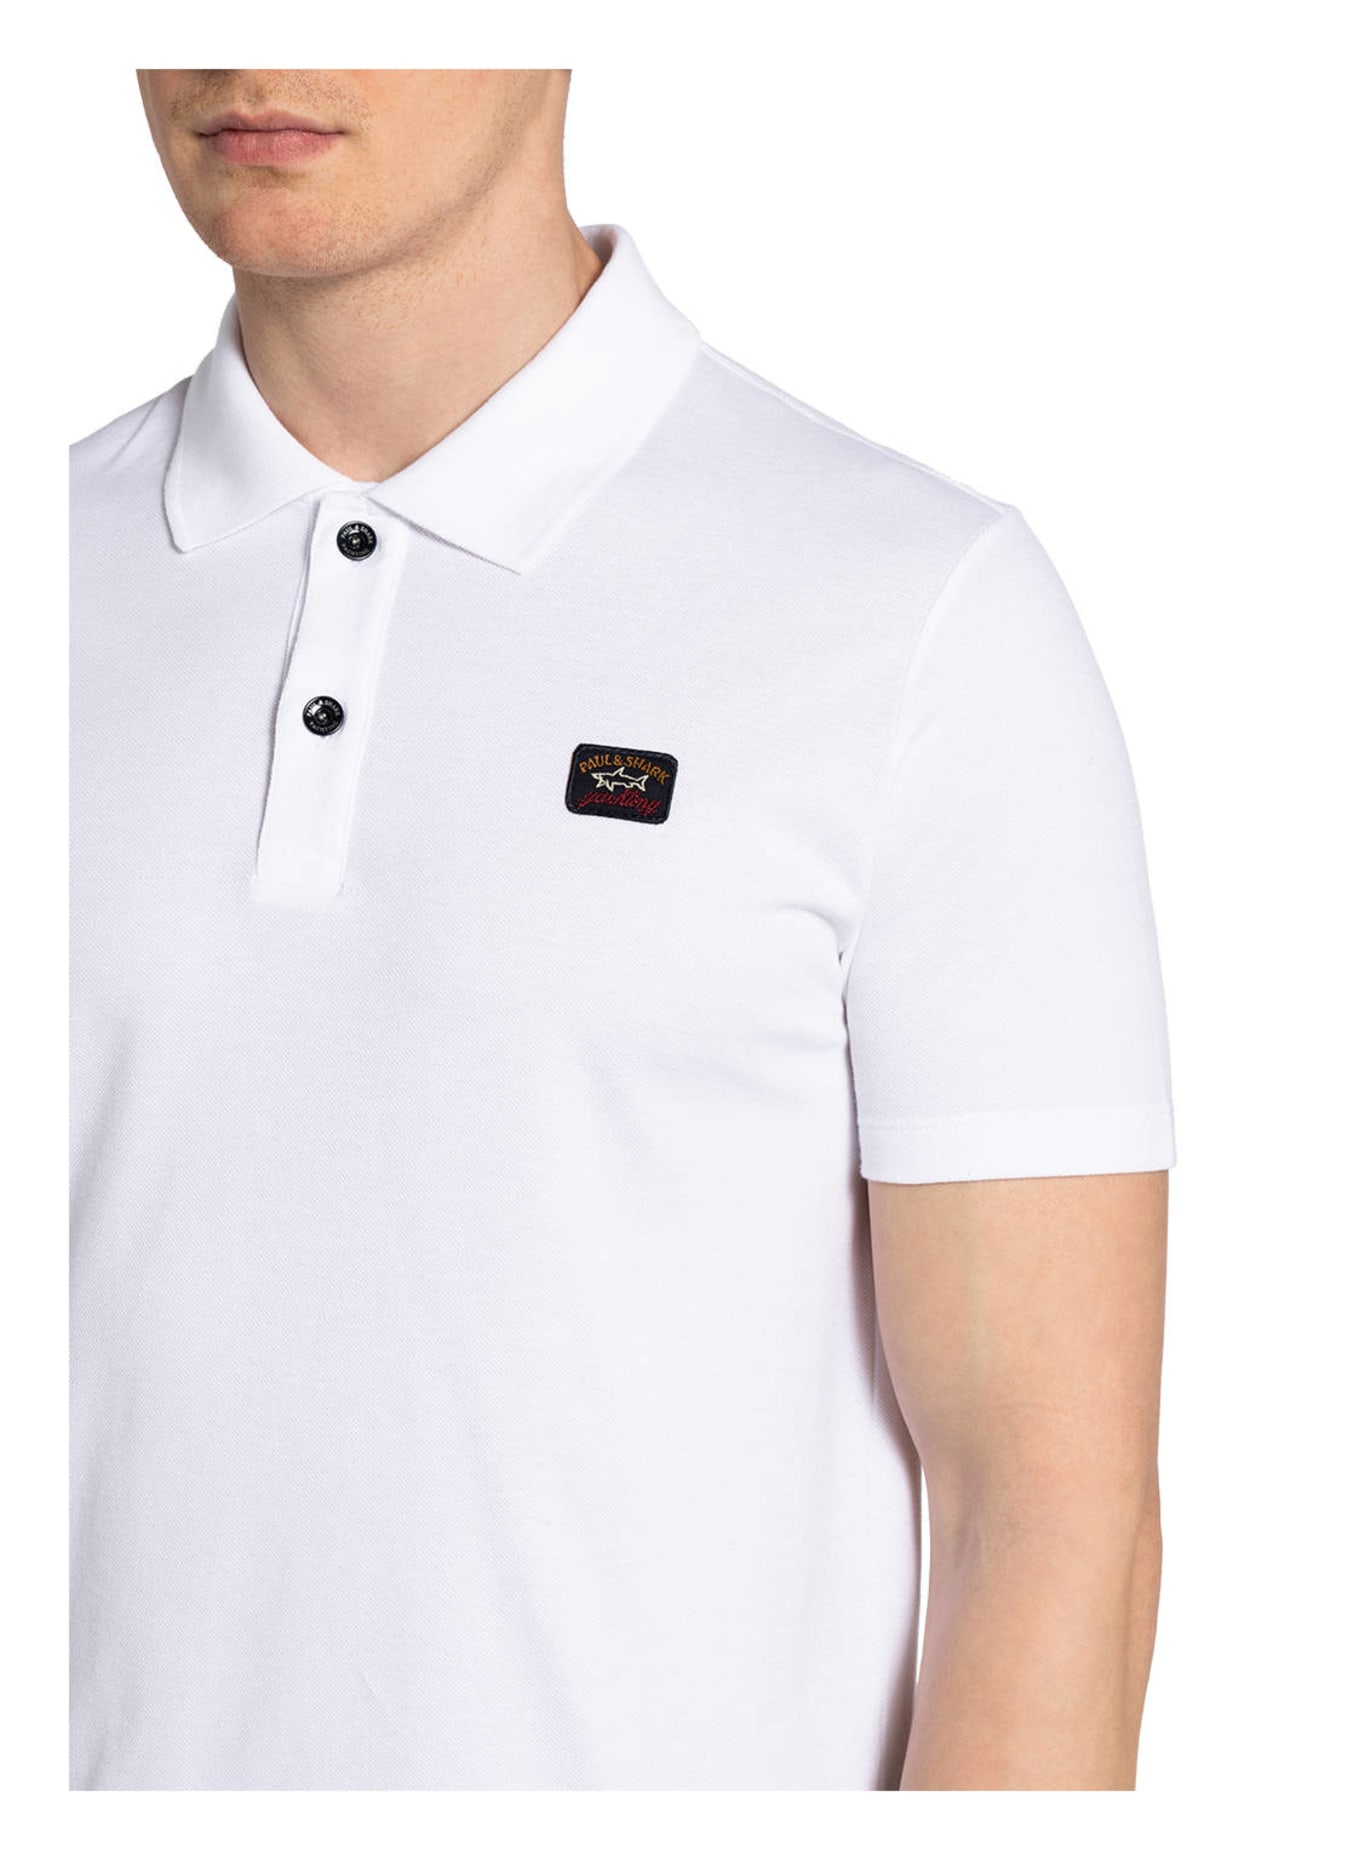 PAUL & SHARK Piqué-Poloshirt, Farbe: WEISS (Bild 4)